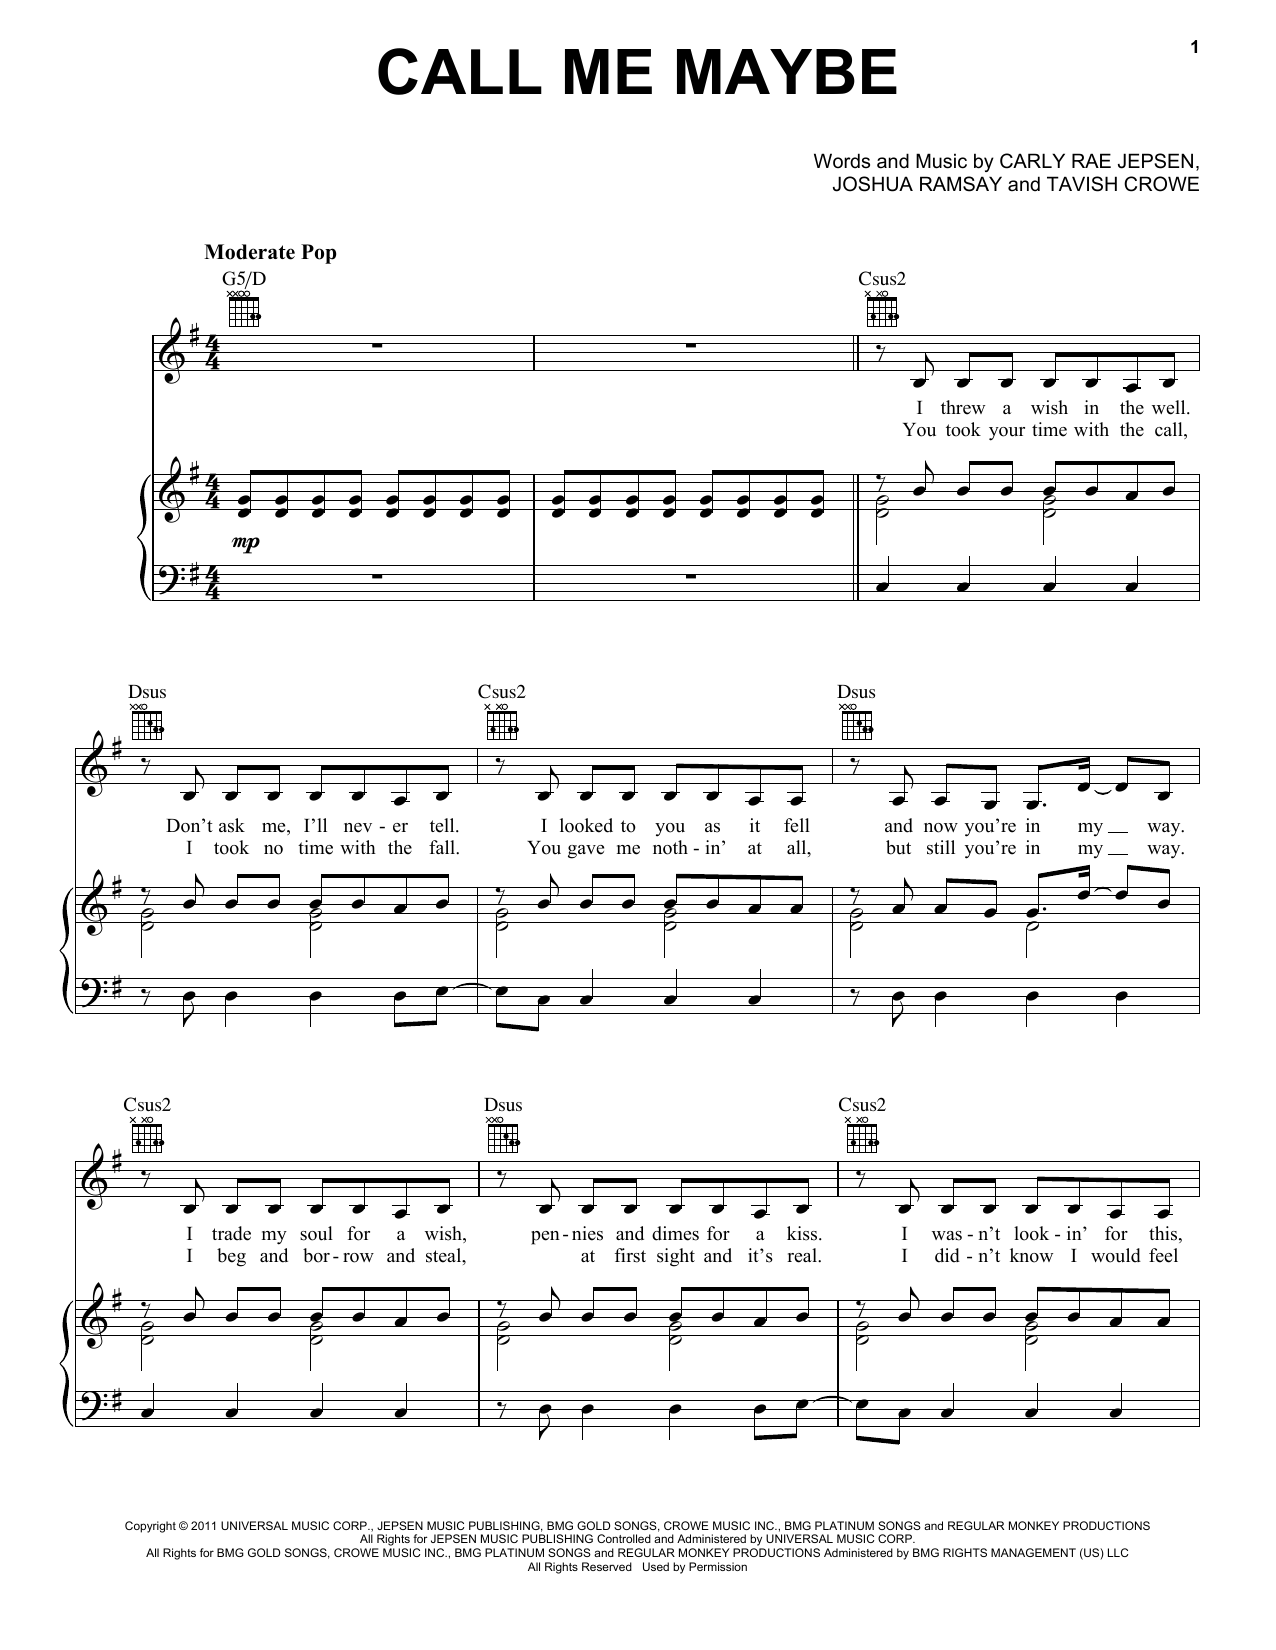 Carly Rae Jepsen Call Me Maybe Sheet Music Pdf Notes Chords Pop Score Guitar Chords Lyrics Download Printable Sku